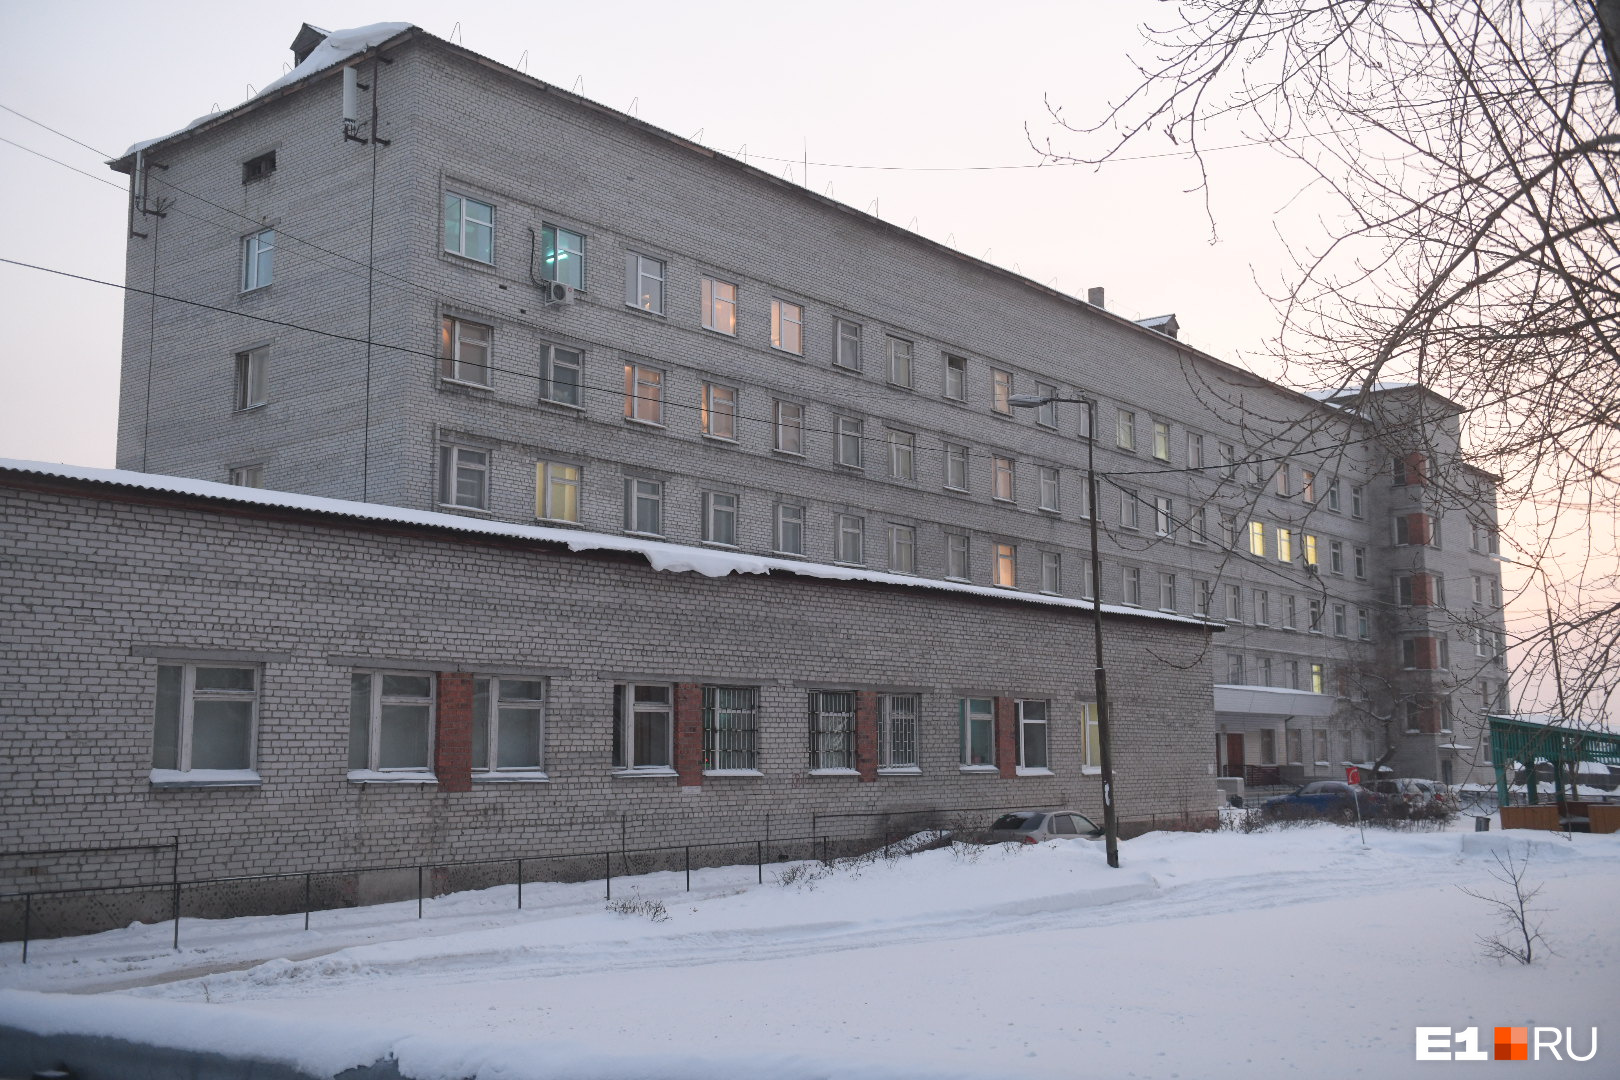 Надежда Завьялова лежит в местной больнице